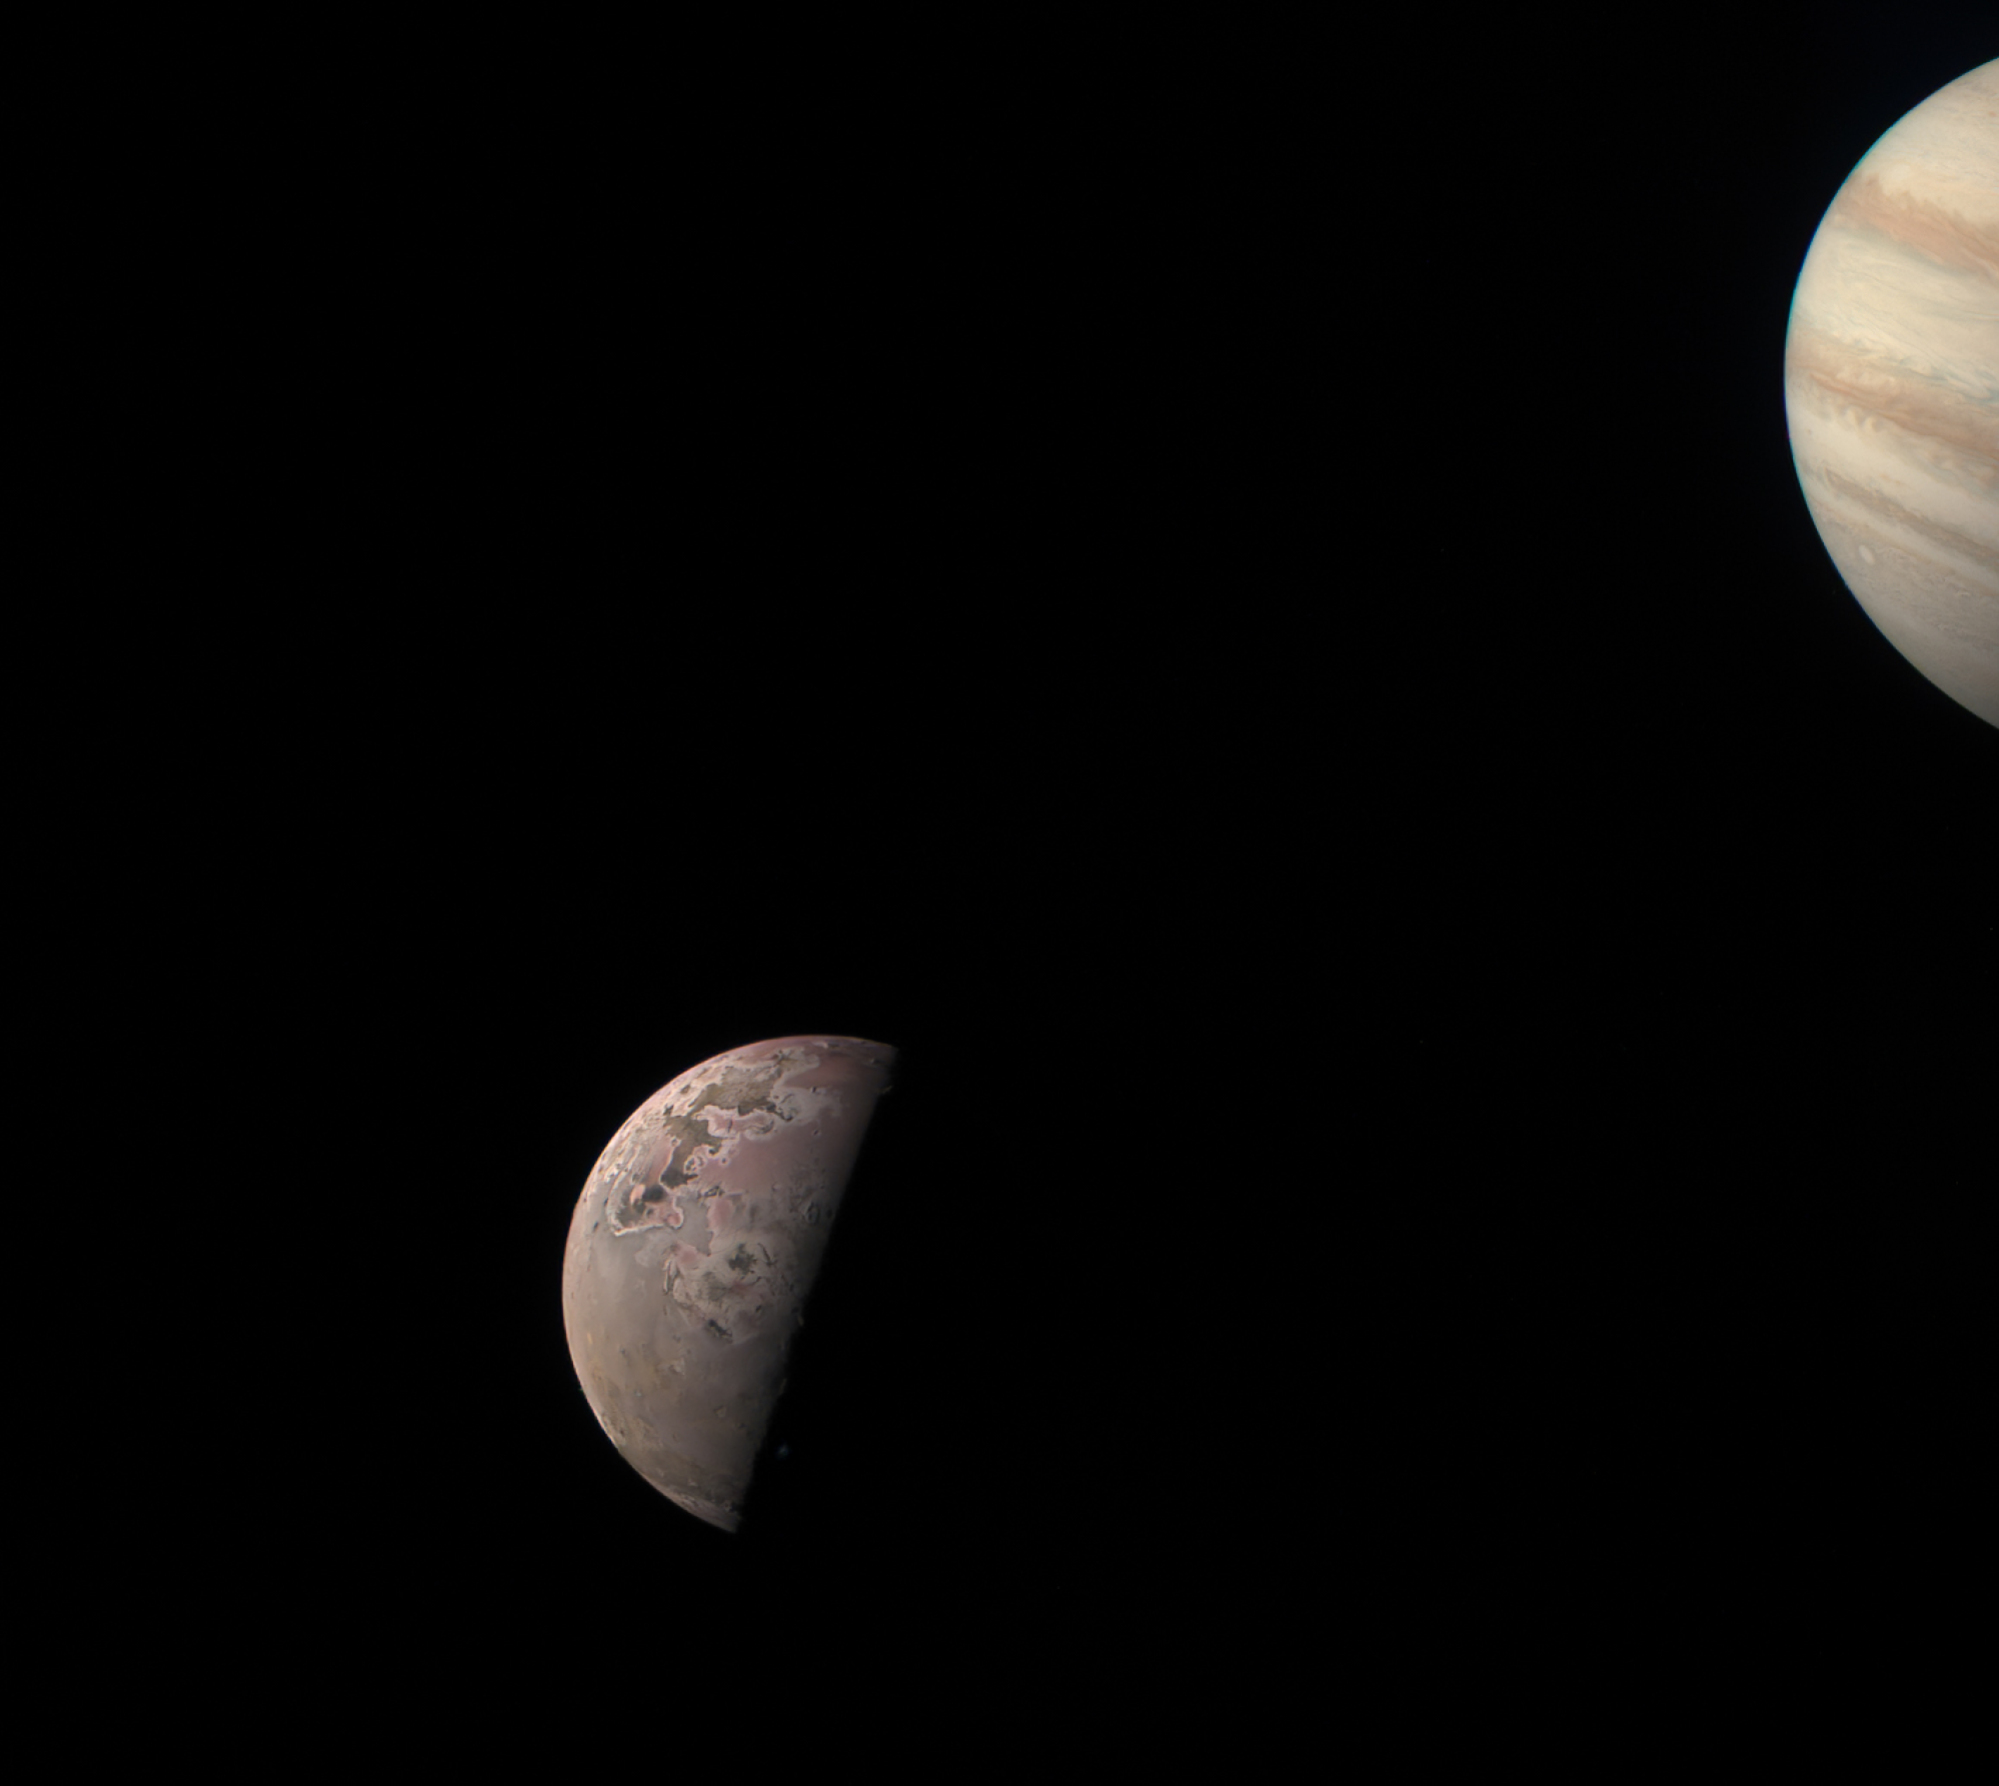 Io, à gauche, et une vue partielle de la géante gazeuse Jupiter, à droite.